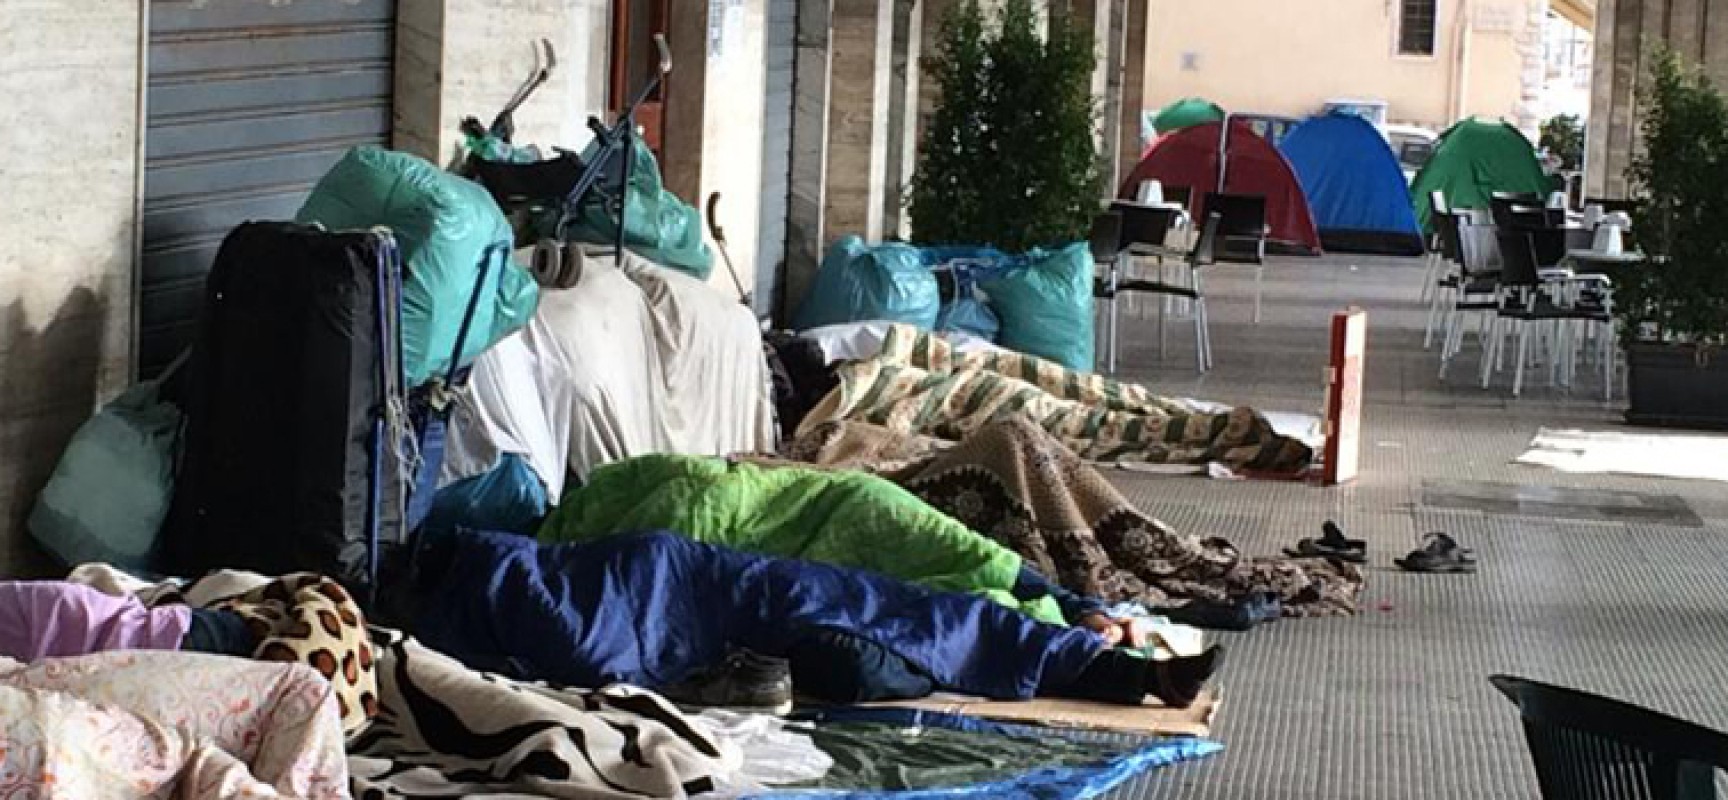 Ambulanti accampati da giorni in piazza Vittorio Emanuele / FOTO